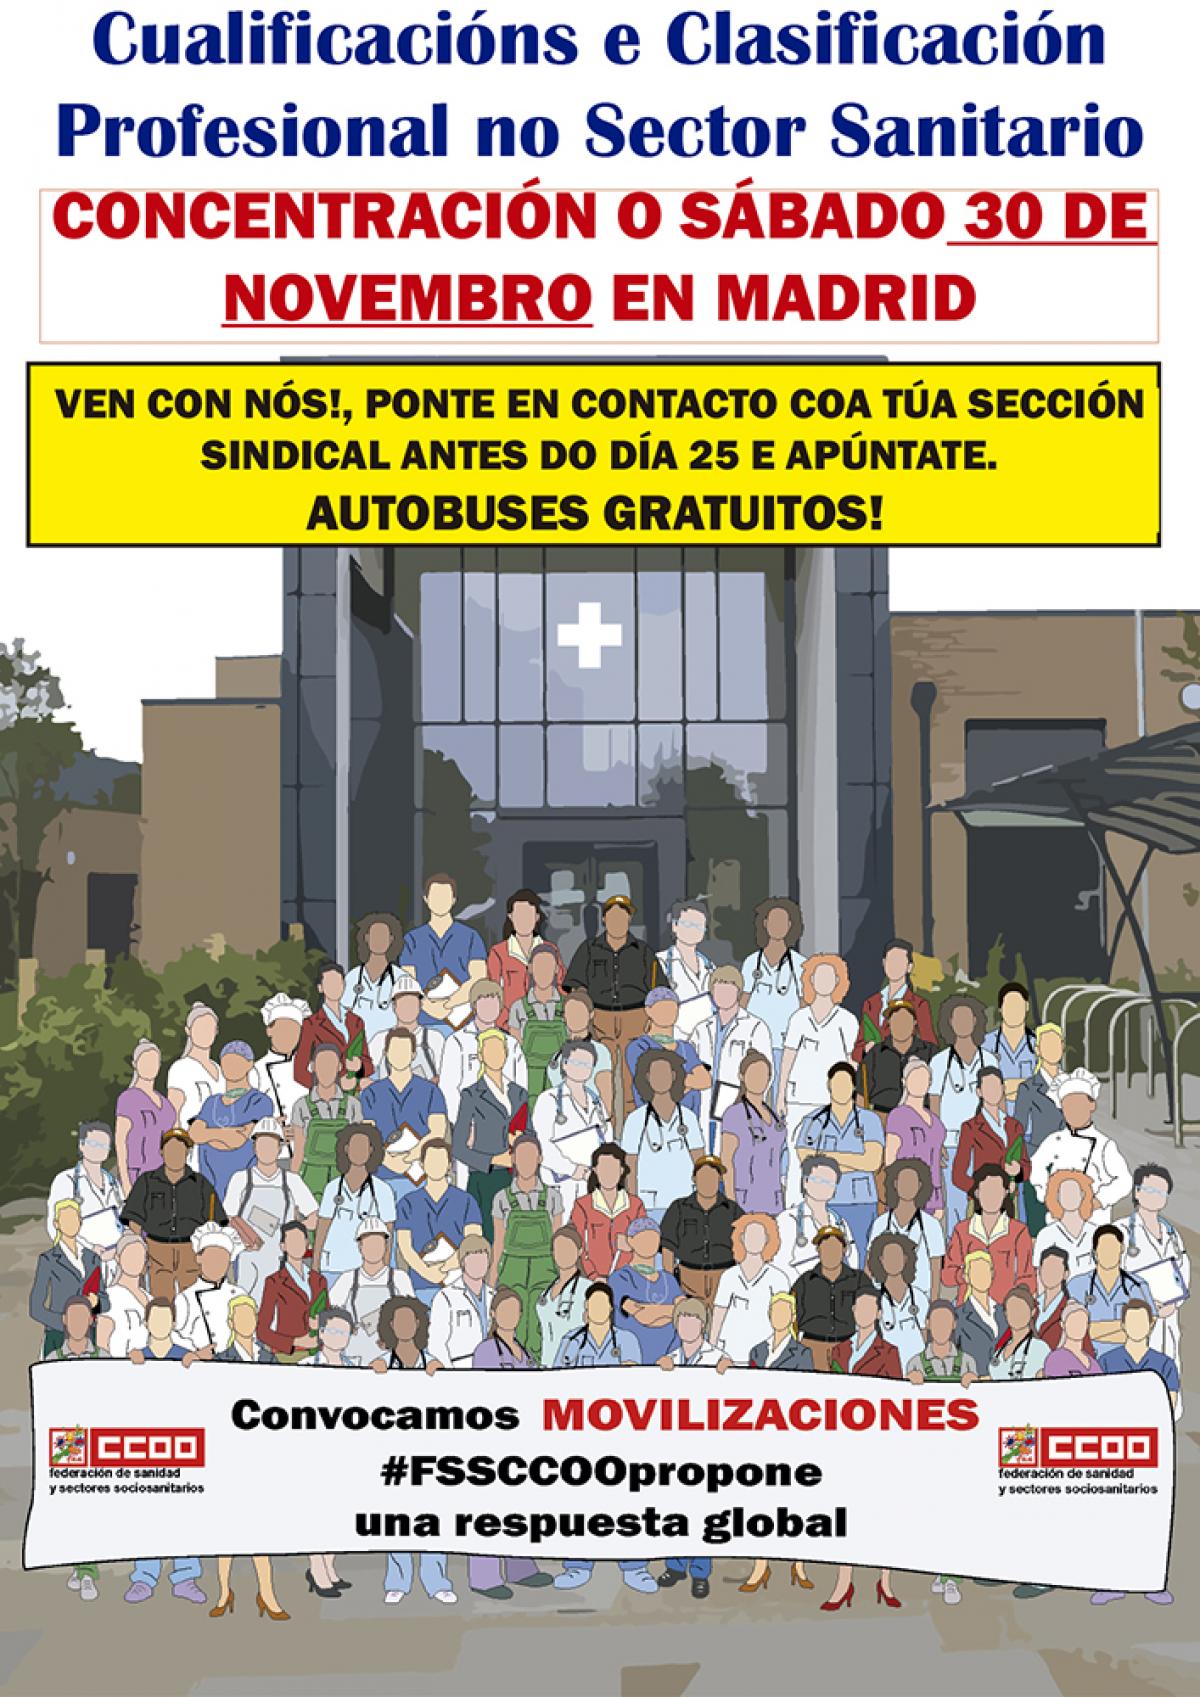 Concentración o sábado 30 de novembro en Madrid